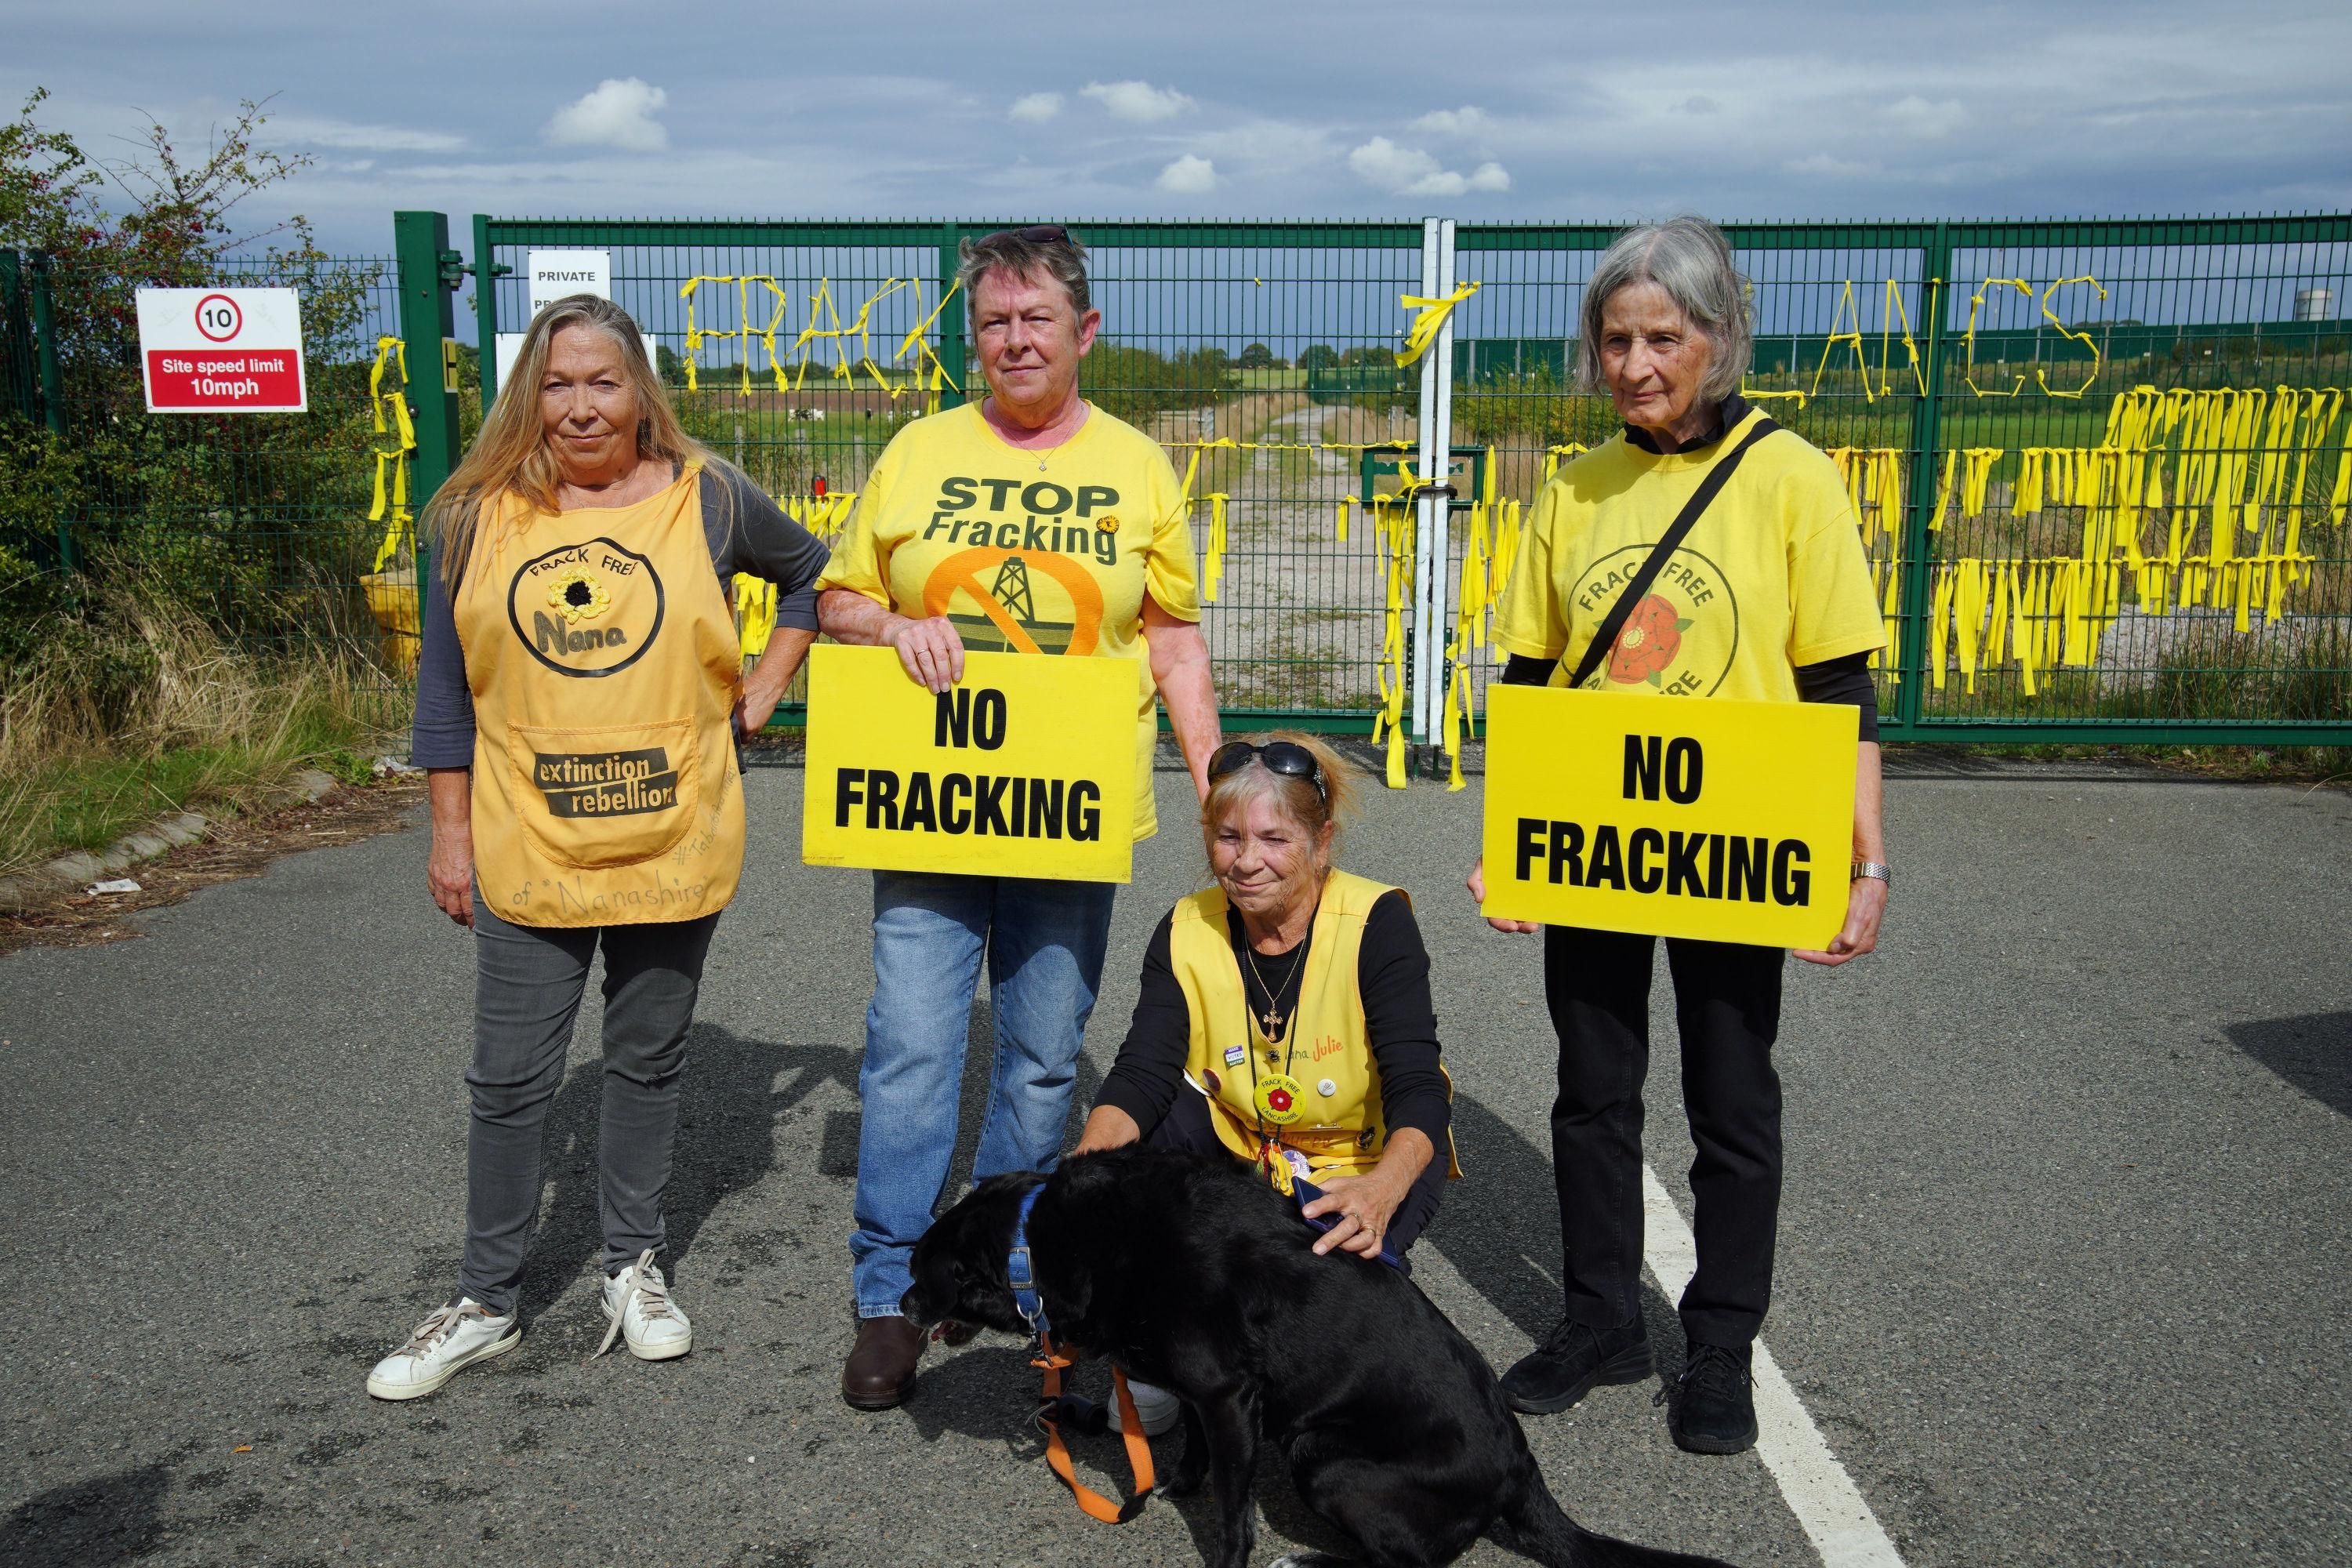 anti-fracking protest in UK